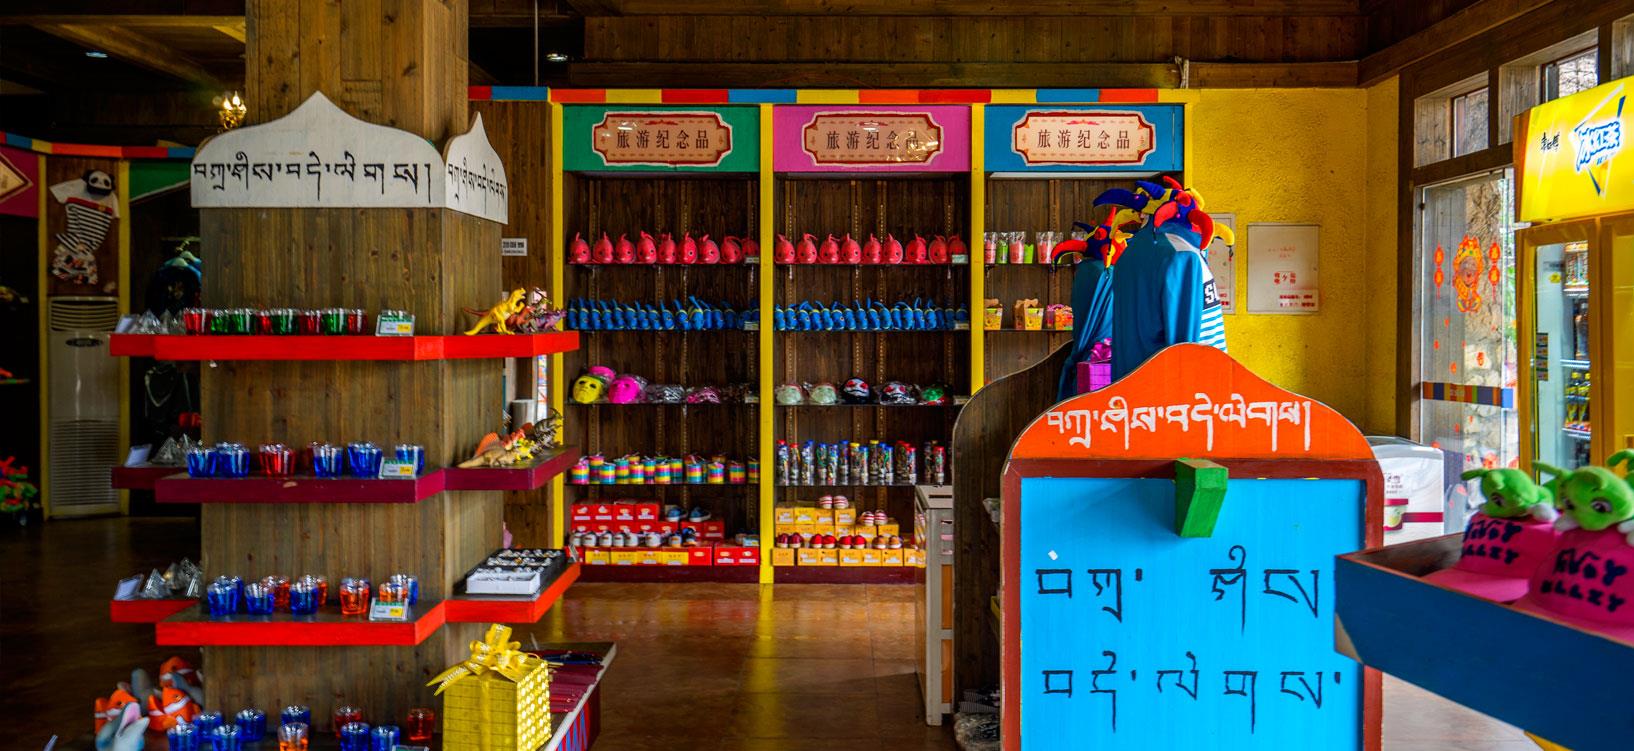 除了丰富的主题商品，藏羌彝特色商品将在这里汇聚，让您饱览民俗风情。
主营：主题商品、饮料、雪糕、胶卷、日用品